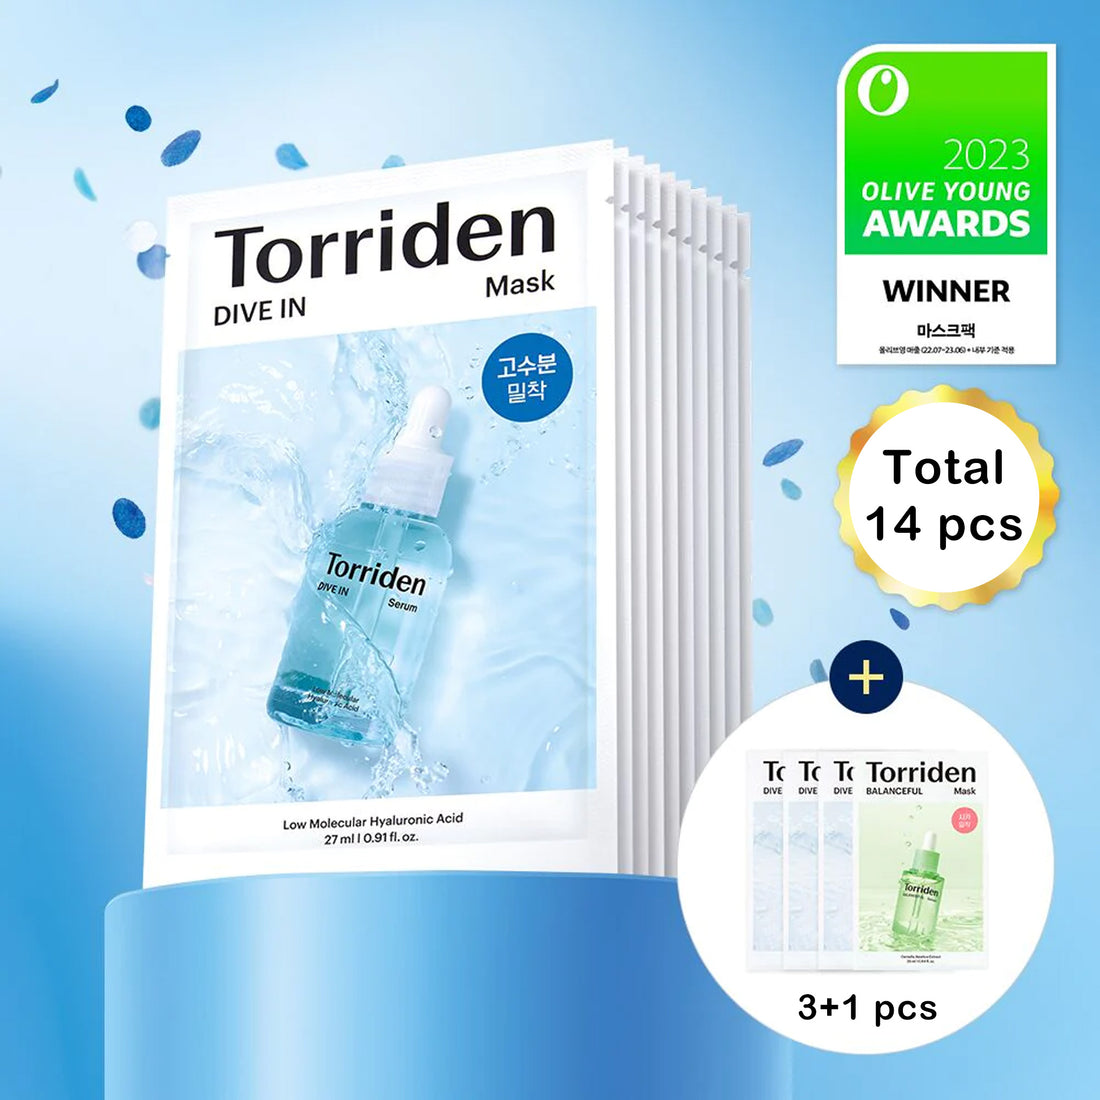 Torriden DIVE-IN 低分子玻尿酸面膜 10片+3+1